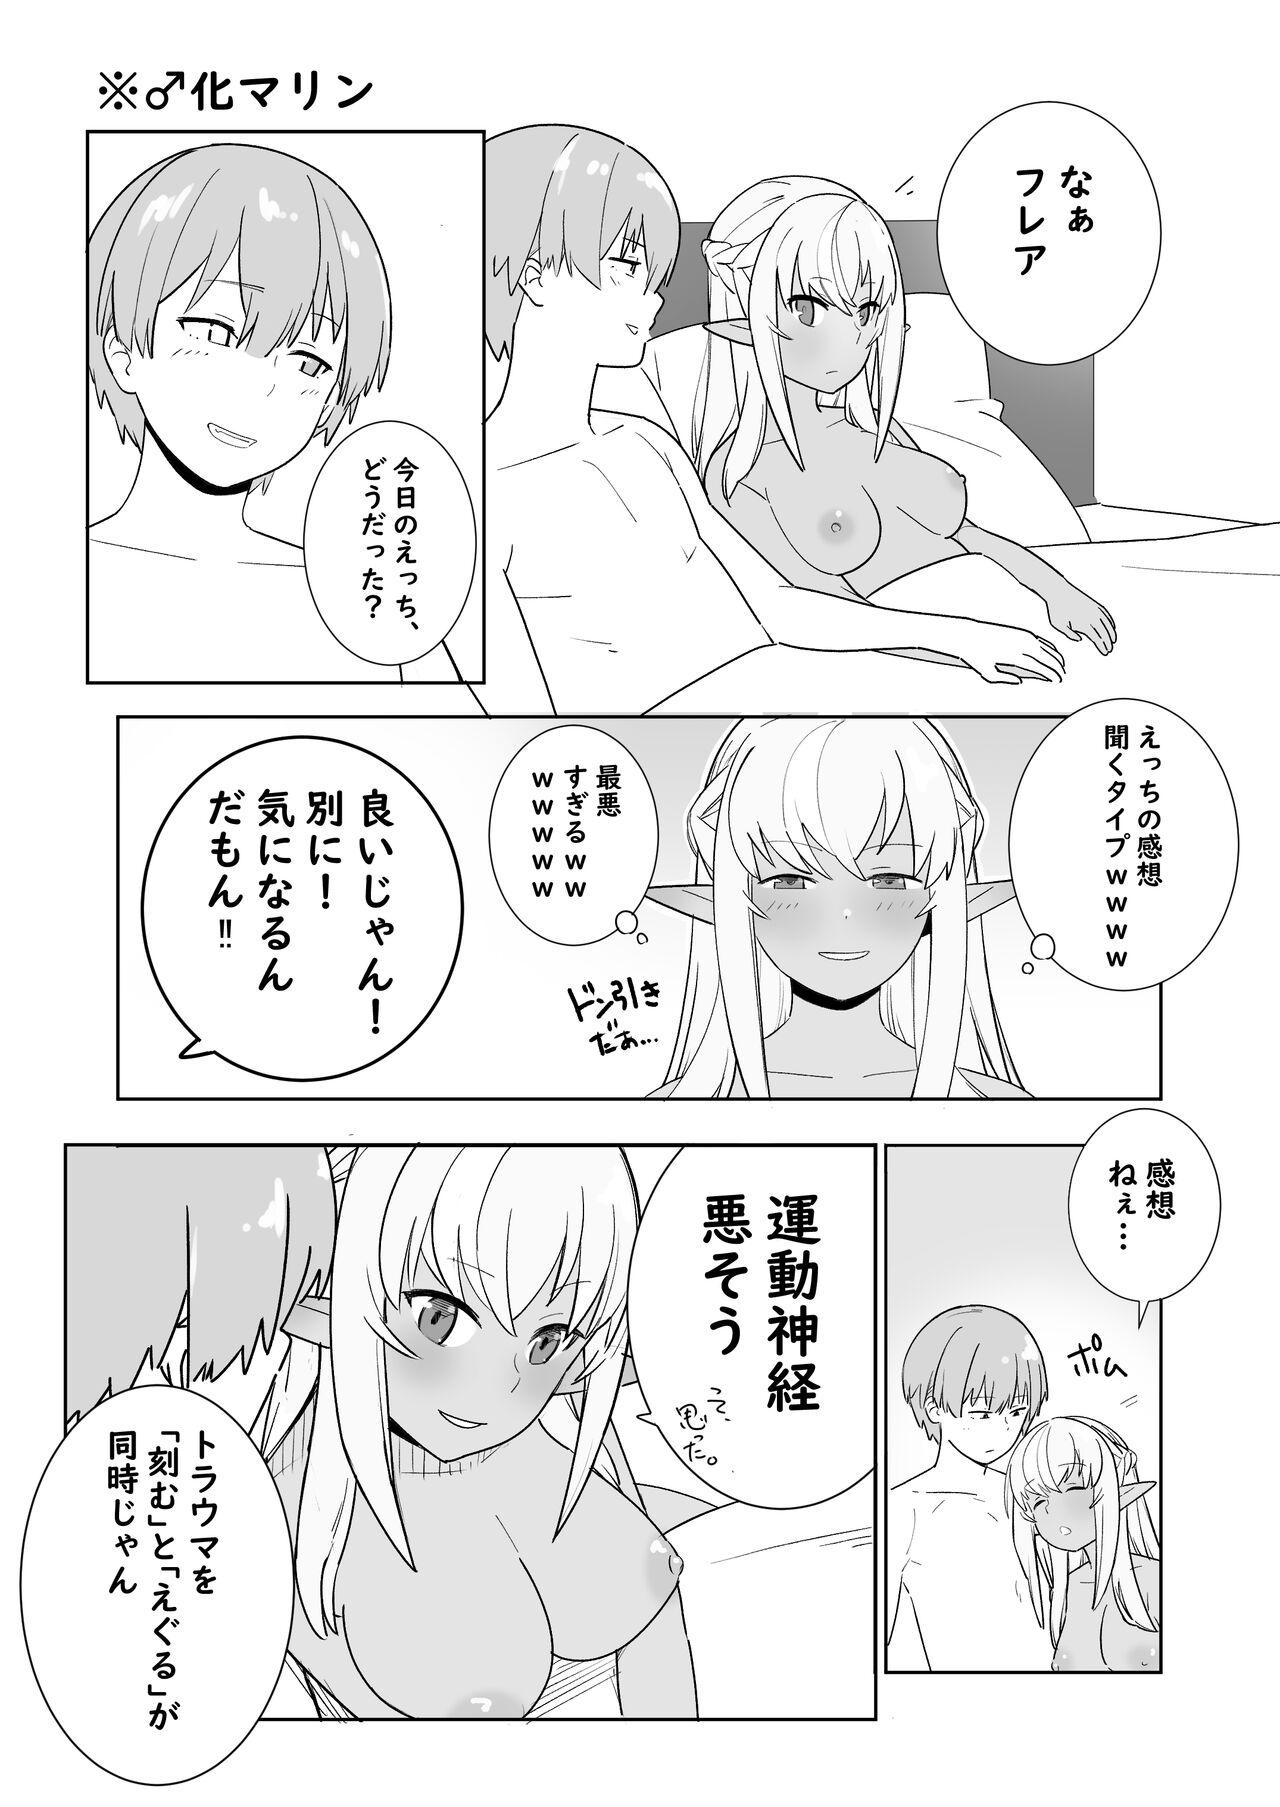 Petite Teen Twitter Short Manga - Hololive Analfucking - Page 8